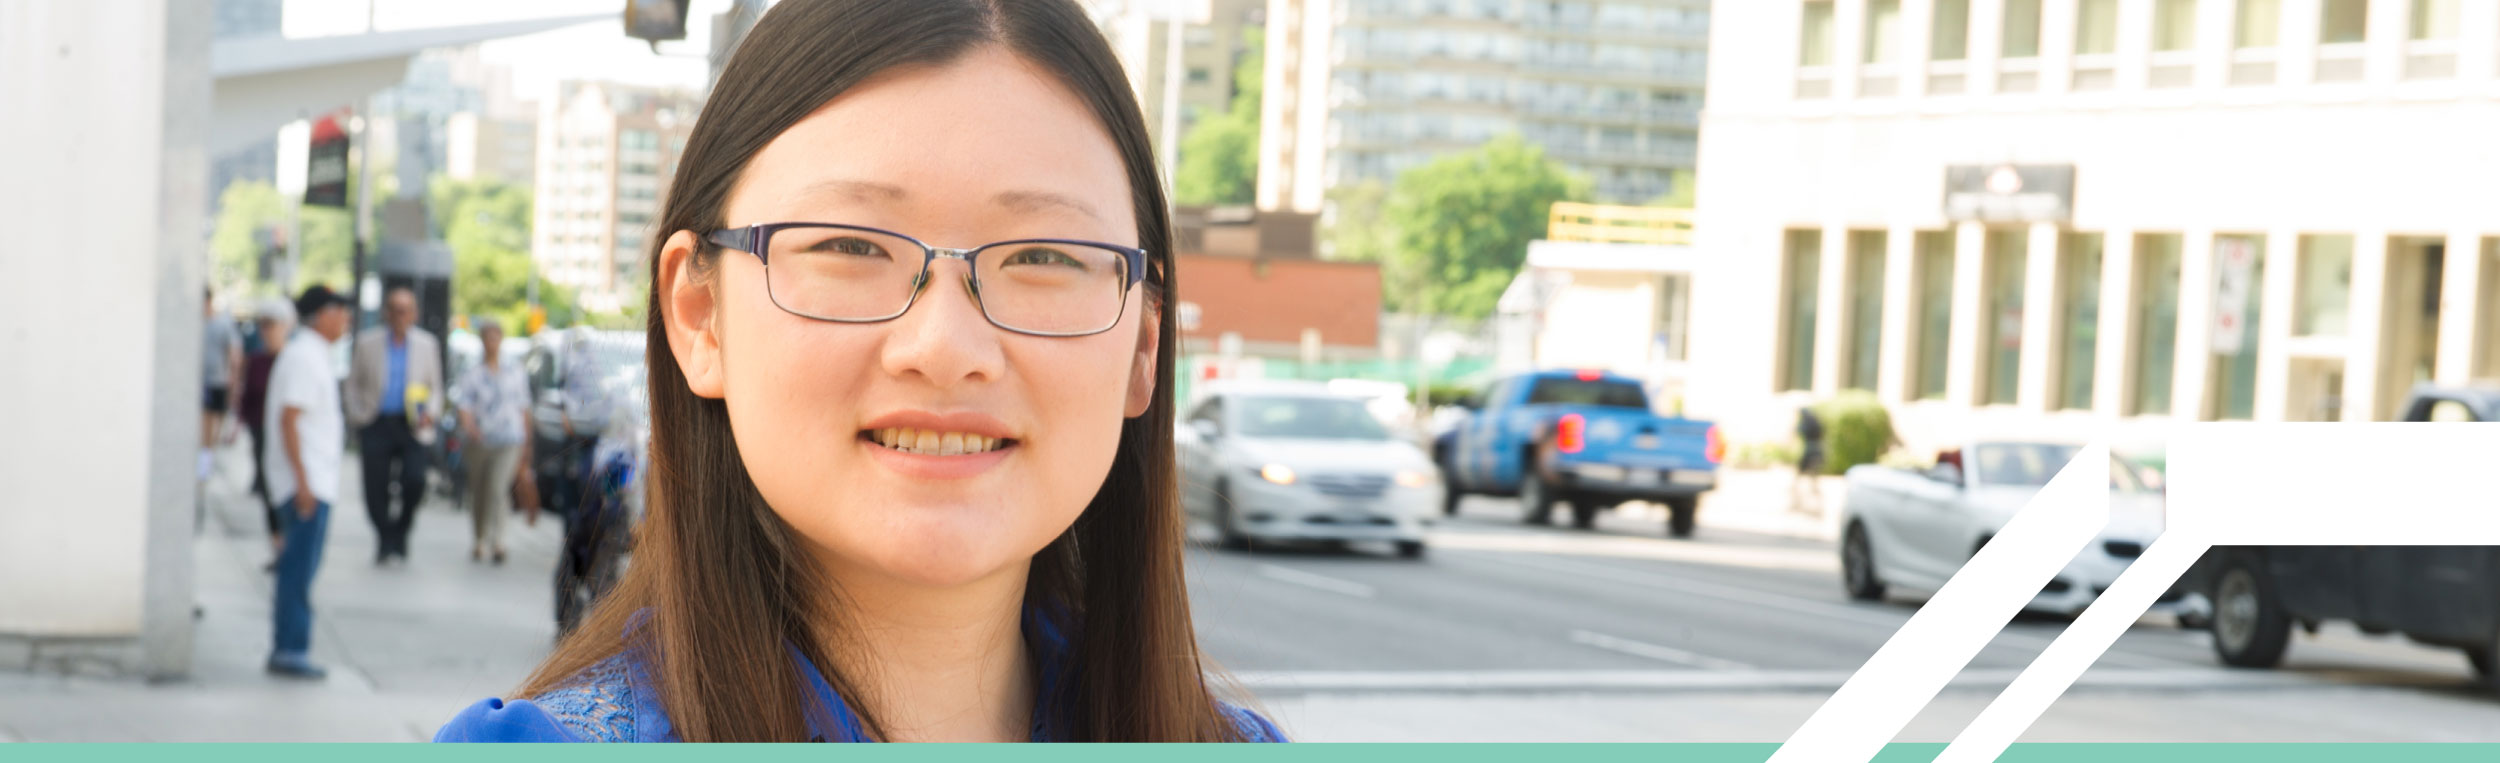 Une femme asiatique souriante aux cheveux noirs longs et raides portant des lunettes et se tenant près d'une rue animée de la ville